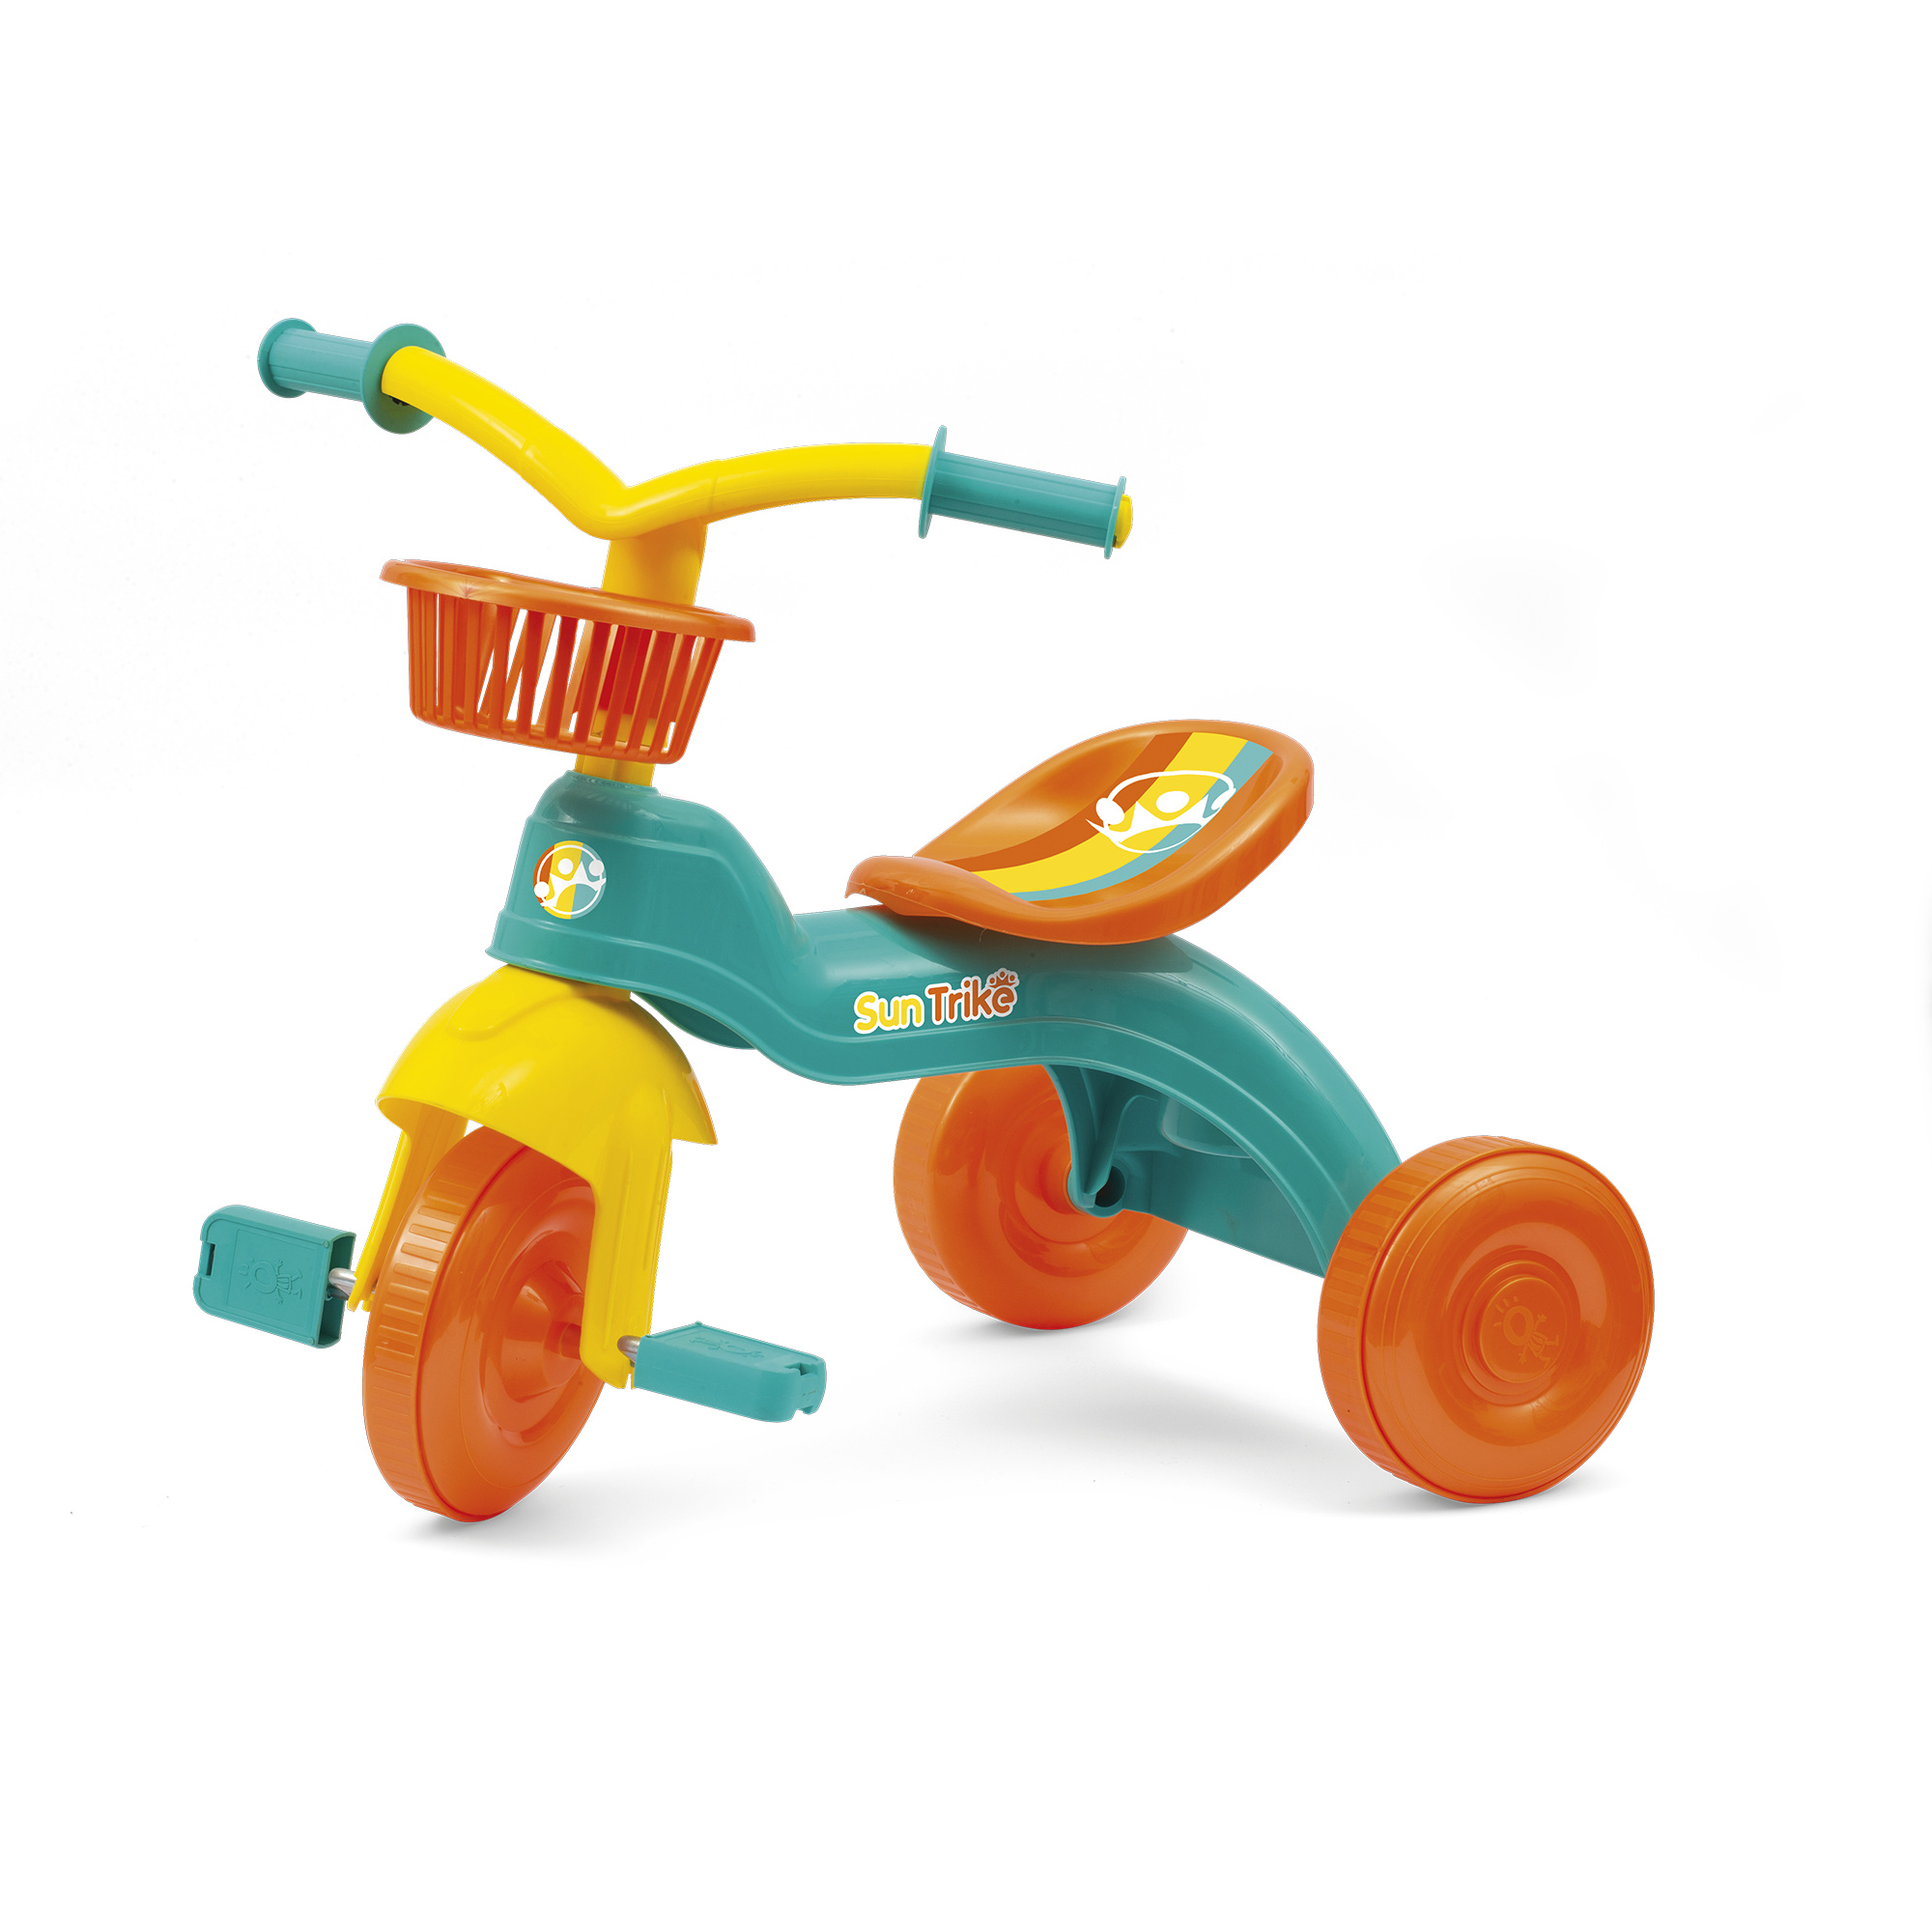 Fun trike - il tuo primo triciclo: pratico, leggero e colorato - con seggiolino regolabile e cesti portaoggetti - SUN&SPORT